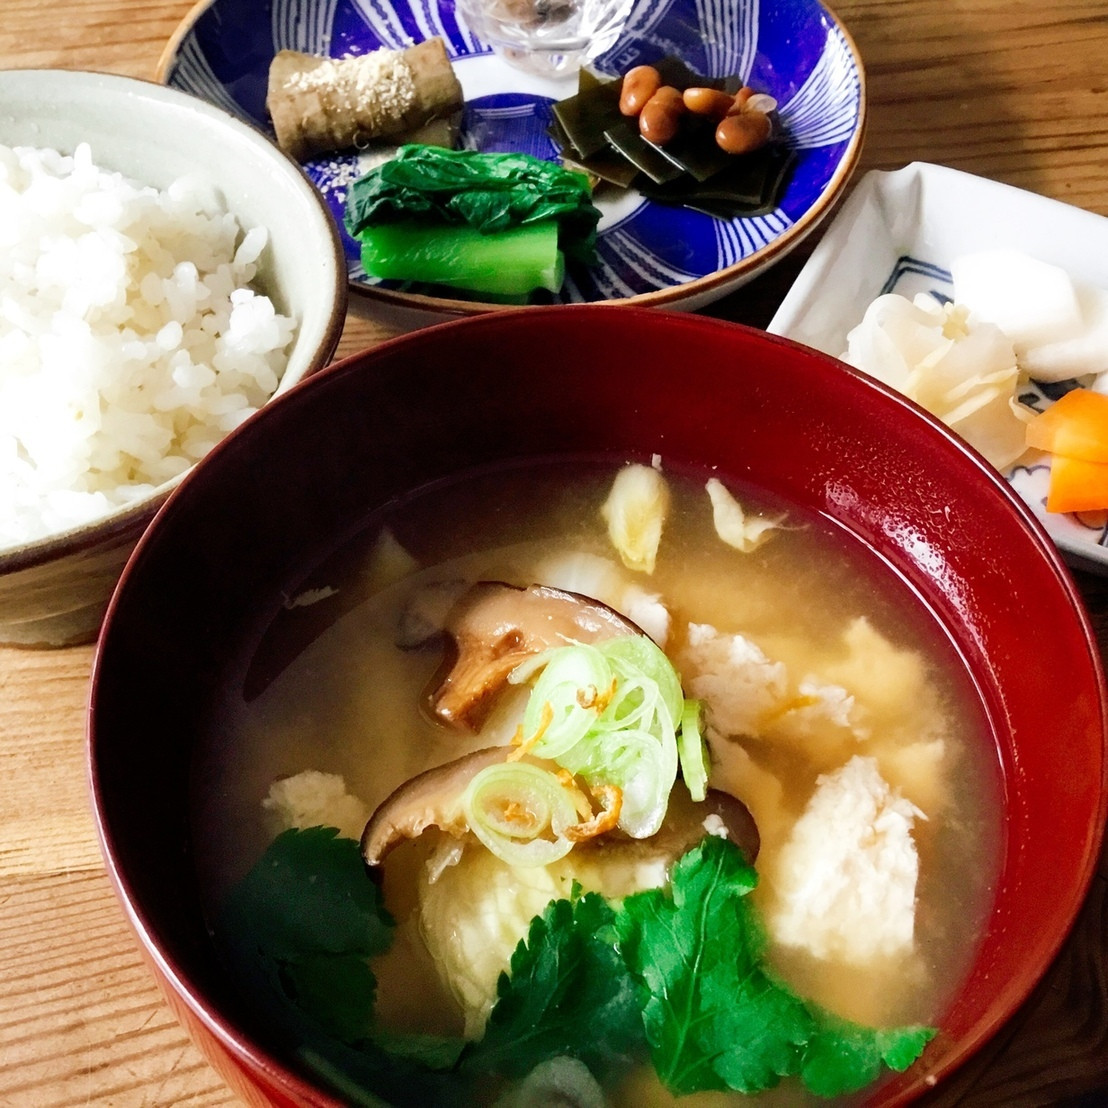 高円寺南のカフェ・和食【つるまめ】<span>スローな自然派ご飯</span>